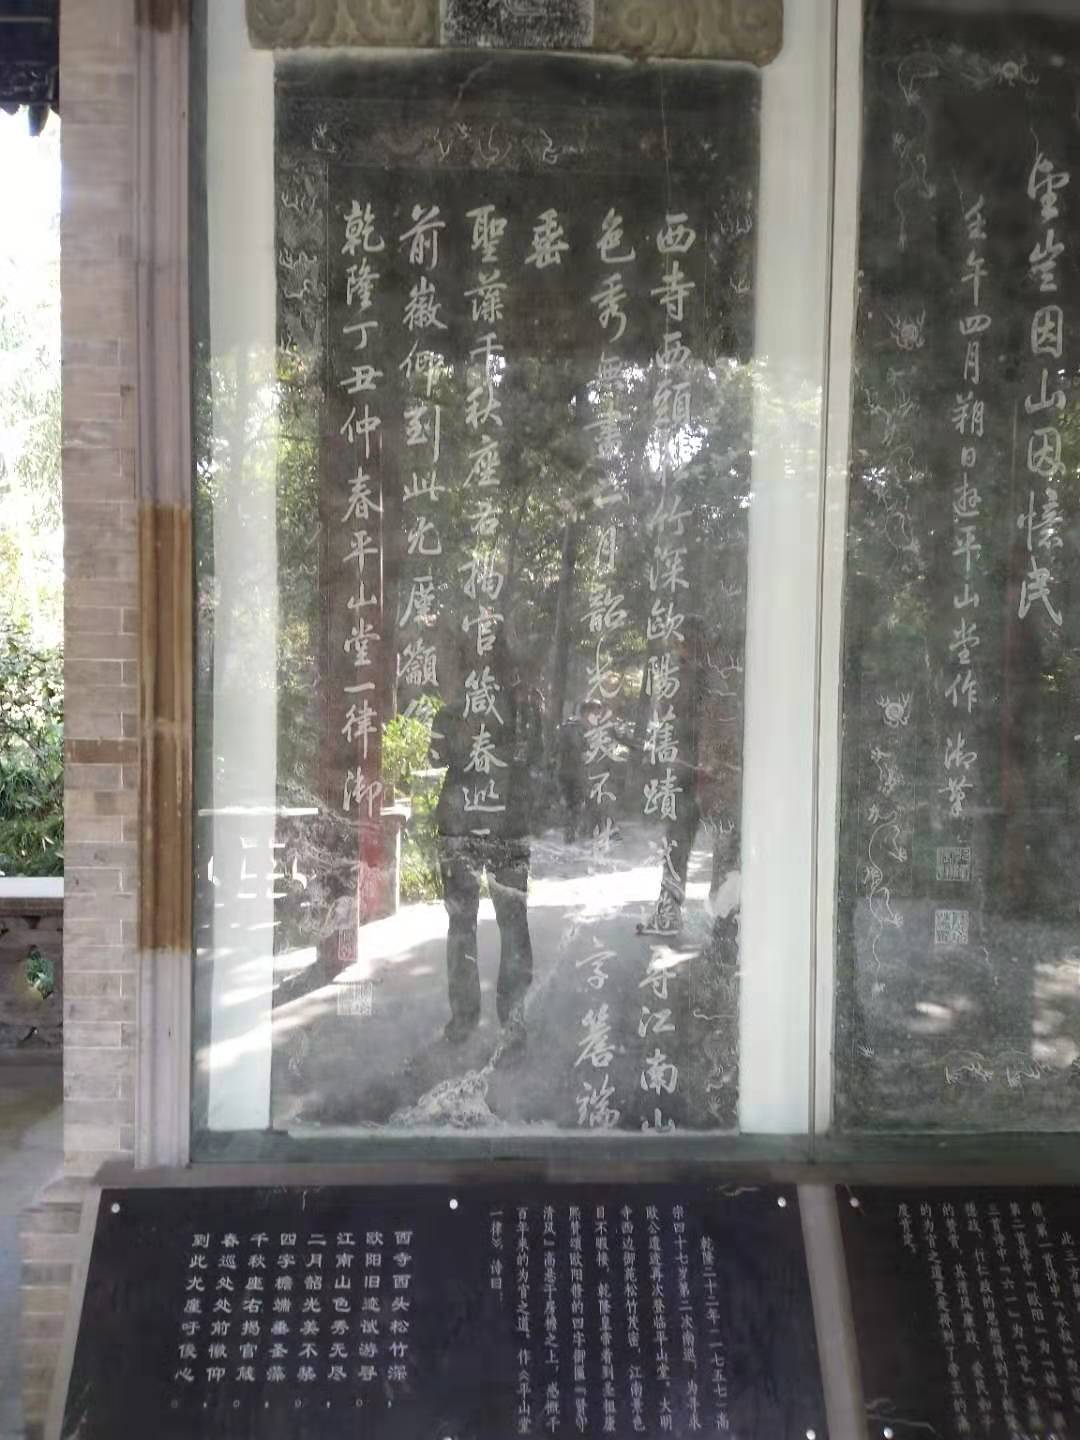 平山堂是北宋文学家欧阳修在扬州为官时所建就在大明寺内内存有前言后